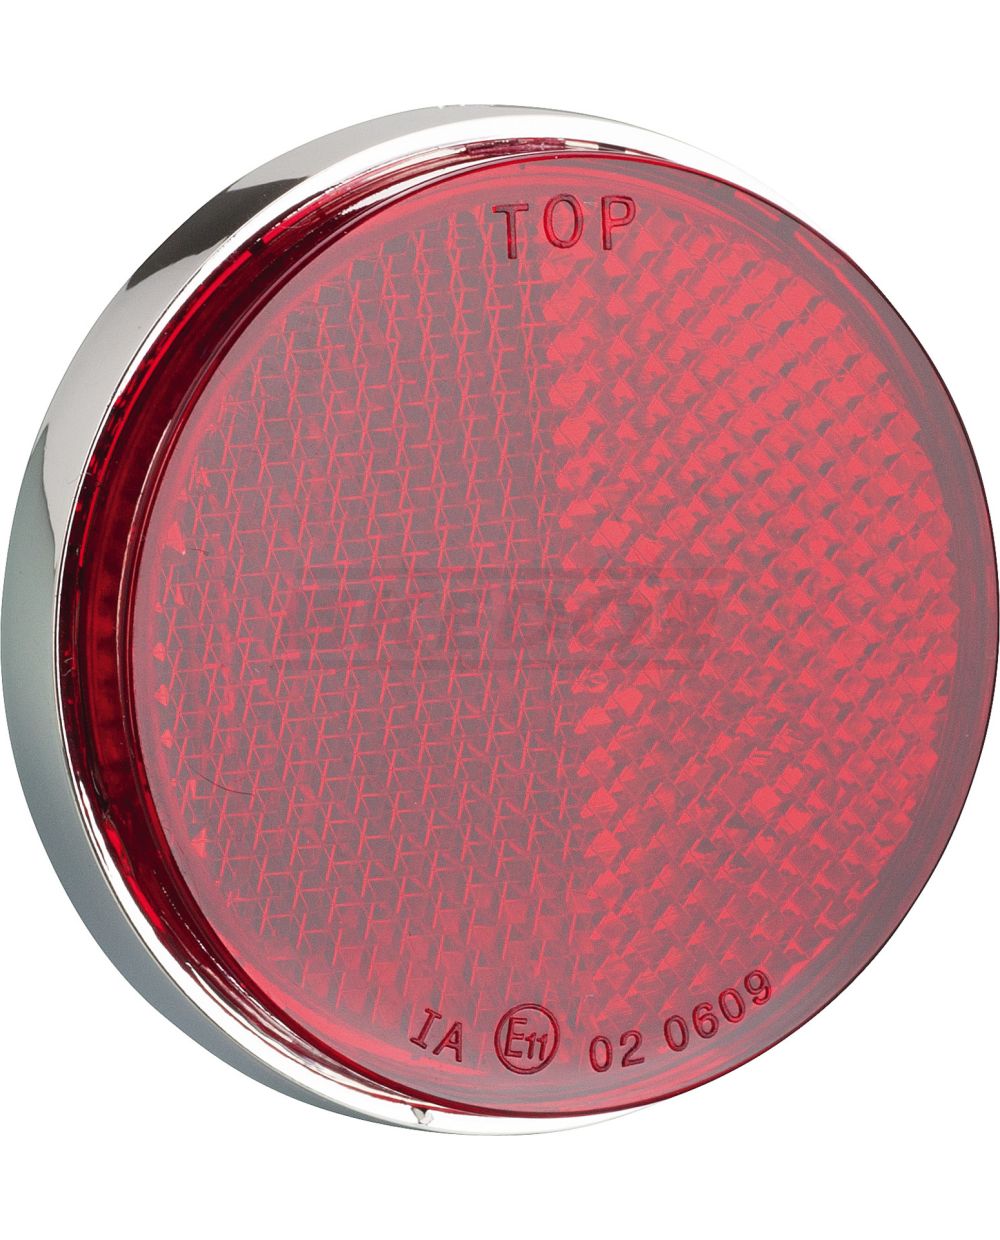 Reflektor rund/rot, verchromtes Gehäuse, Durchmesser 55/59mm, 1 Stück, mit  M5-Gewinde, e-geprüft